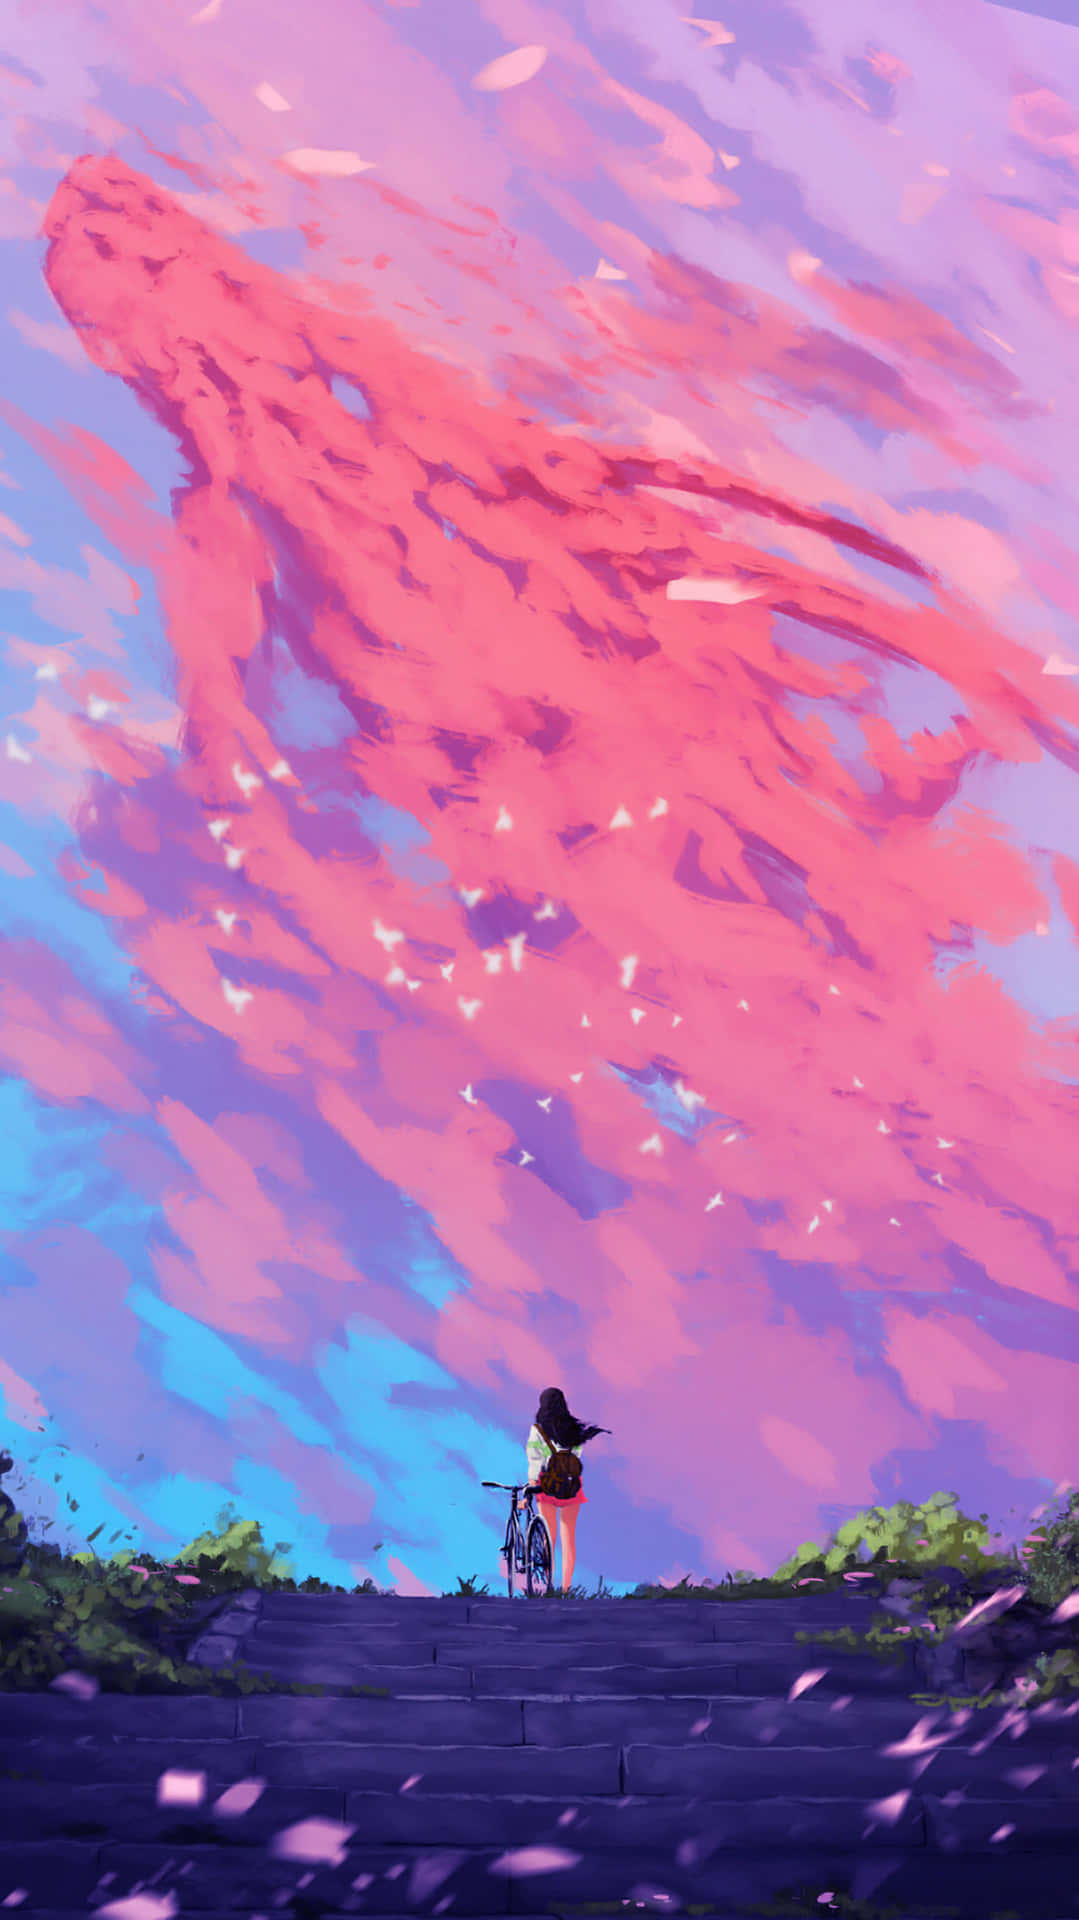 Hình nền anime màu hồng: Mỗi khi nhìn vào hình nền anime màu hồng, bạn sẽ cảm thấy như mình đang du hành đến một thế giới ảo đầy sắc màu và phong phú. Từ tông màu nhạt nhòa đến tông màu sáng, hình nền anime màu hồng sẽ giúp bạn tạo ra một không gian làm việc hay giải trí thật đáng yêu và tươi sáng.